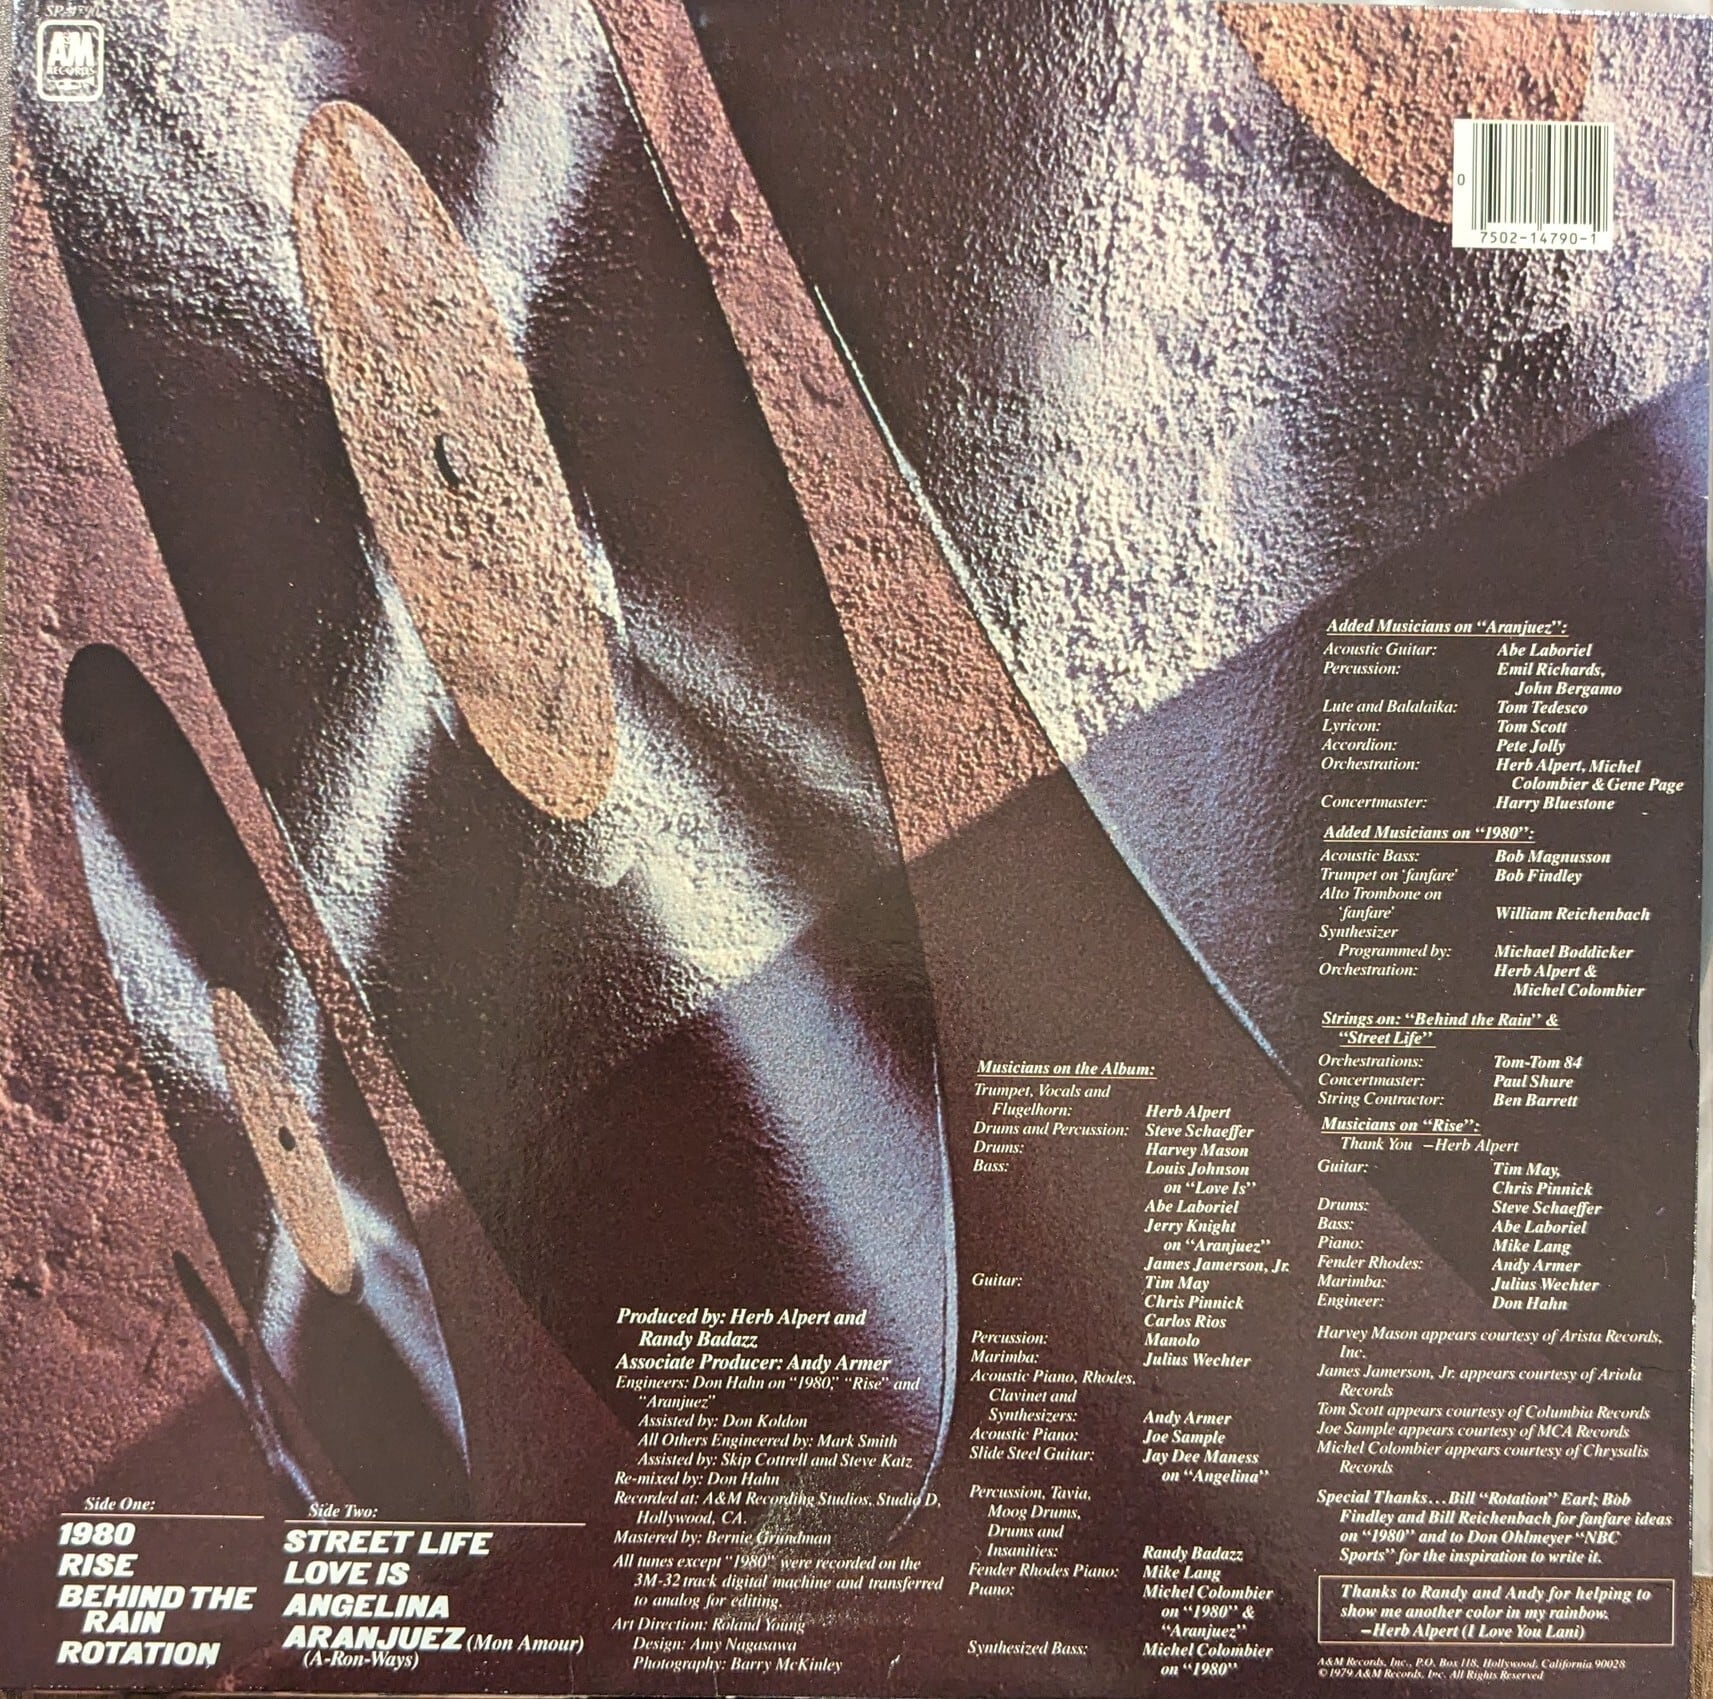 Herb Alpert「Rise」：LPレコード | 音とこだま